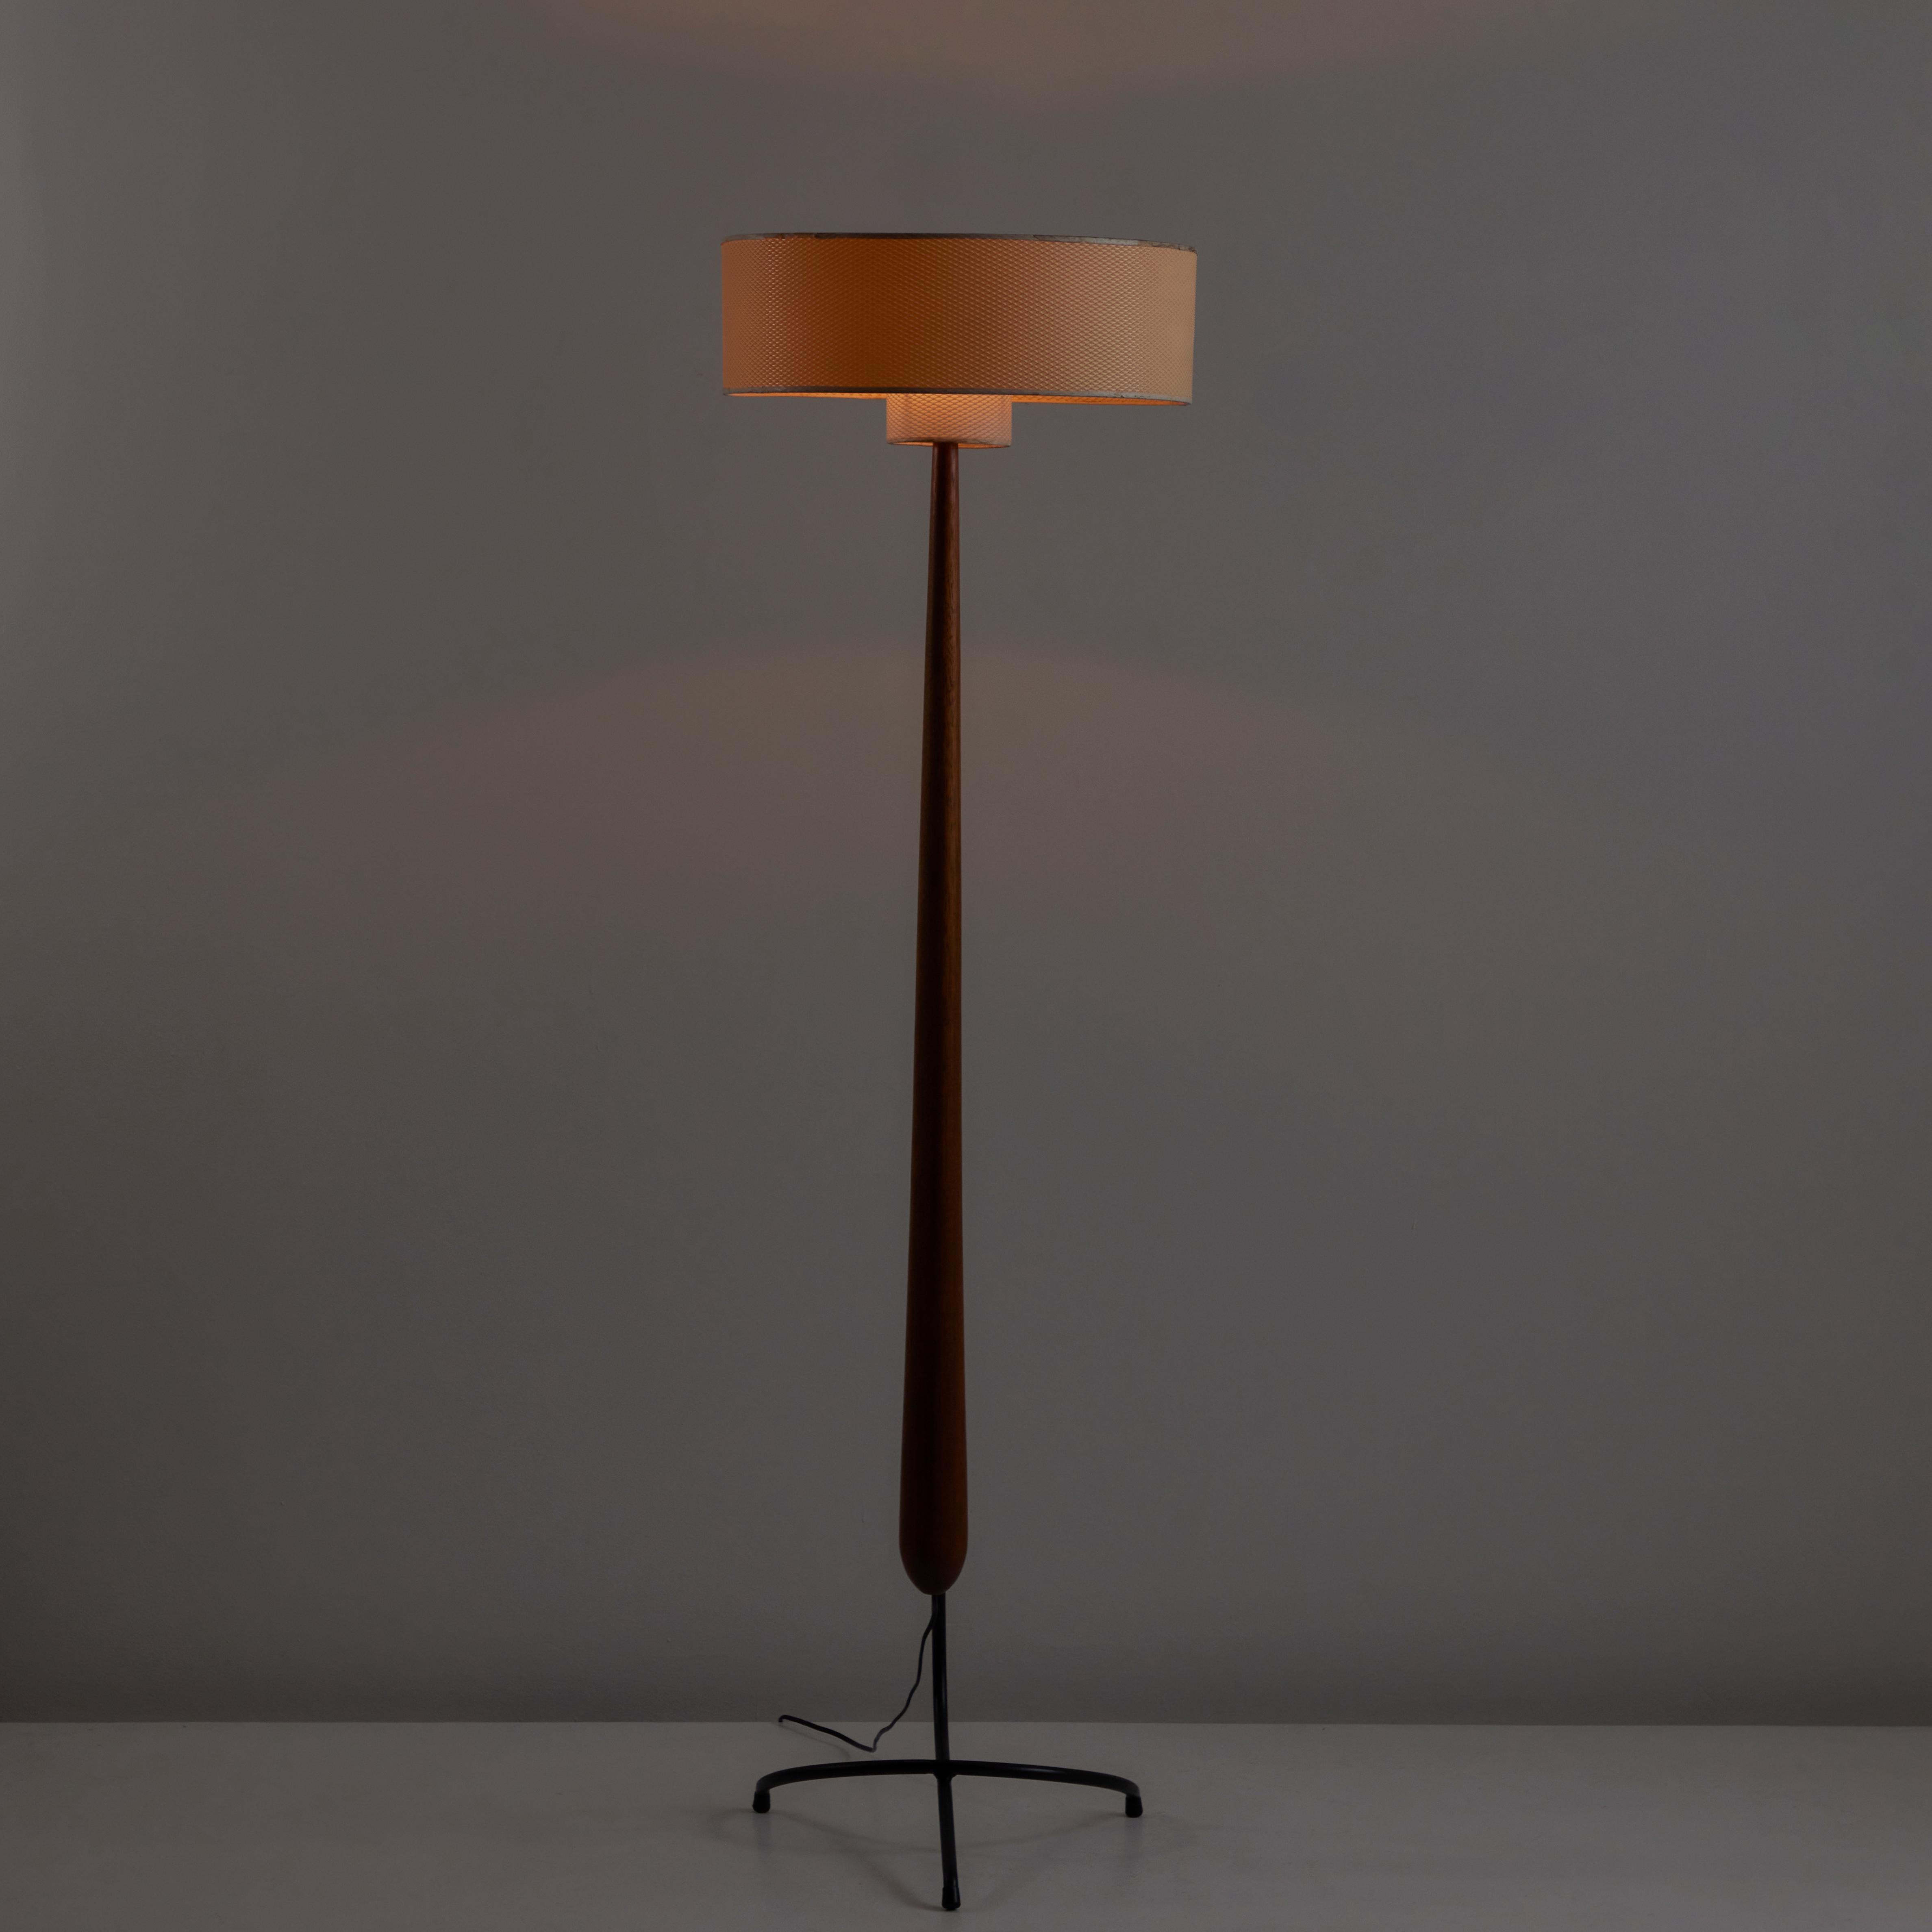 Rare lampadaire modèle 14.958 de Rispal. Conçu et fabriqué en France, vers les années 1950. Rare lampadaire sculptural avec une tige élancée en bois personnalisé, une base en acier courbée imbriquée et un abat-jour en parchemin texturé à double